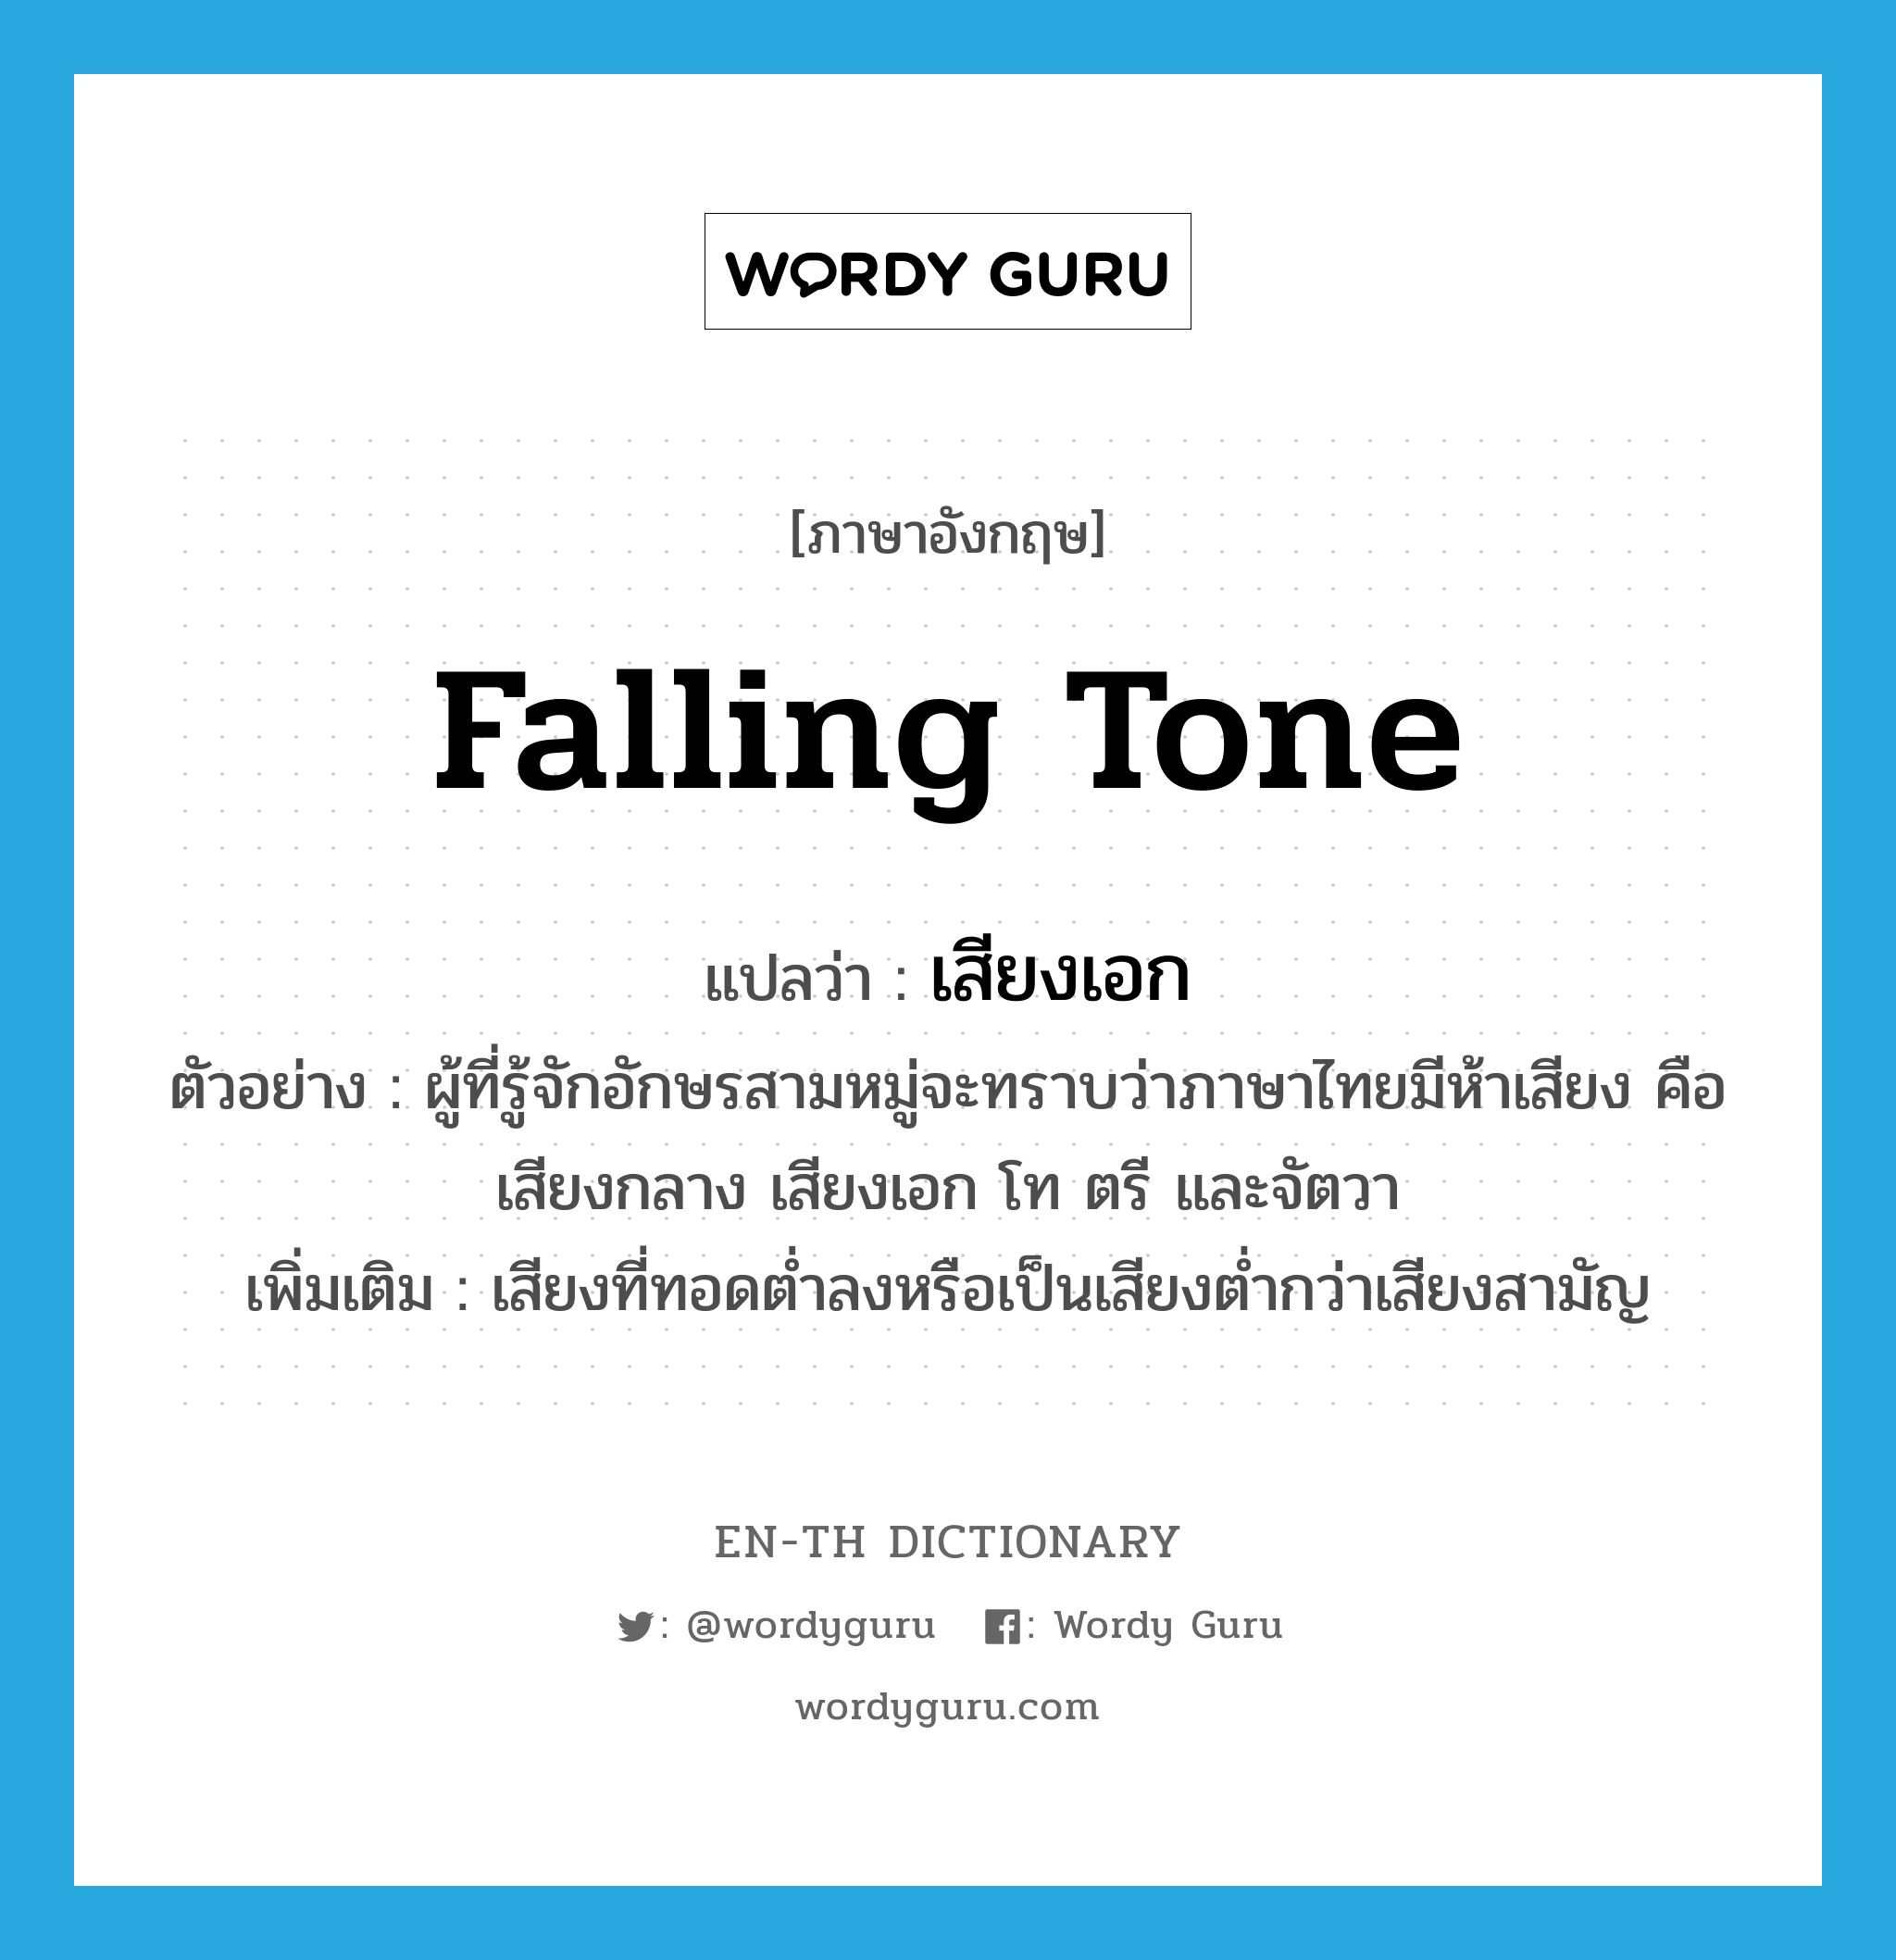 falling tone แปลว่า?, คำศัพท์ภาษาอังกฤษ falling tone แปลว่า เสียงเอก ประเภท N ตัวอย่าง ผู้ที่รู้จักอักษรสามหมู่จะทราบว่าภาษาไทยมีห้าเสียง คือ เสียงกลาง เสียงเอก โท ตรี และจัตวา เพิ่มเติม เสียงที่ทอดต่ำลงหรือเป็นเสียงต่ำกว่าเสียงสามัญ หมวด N